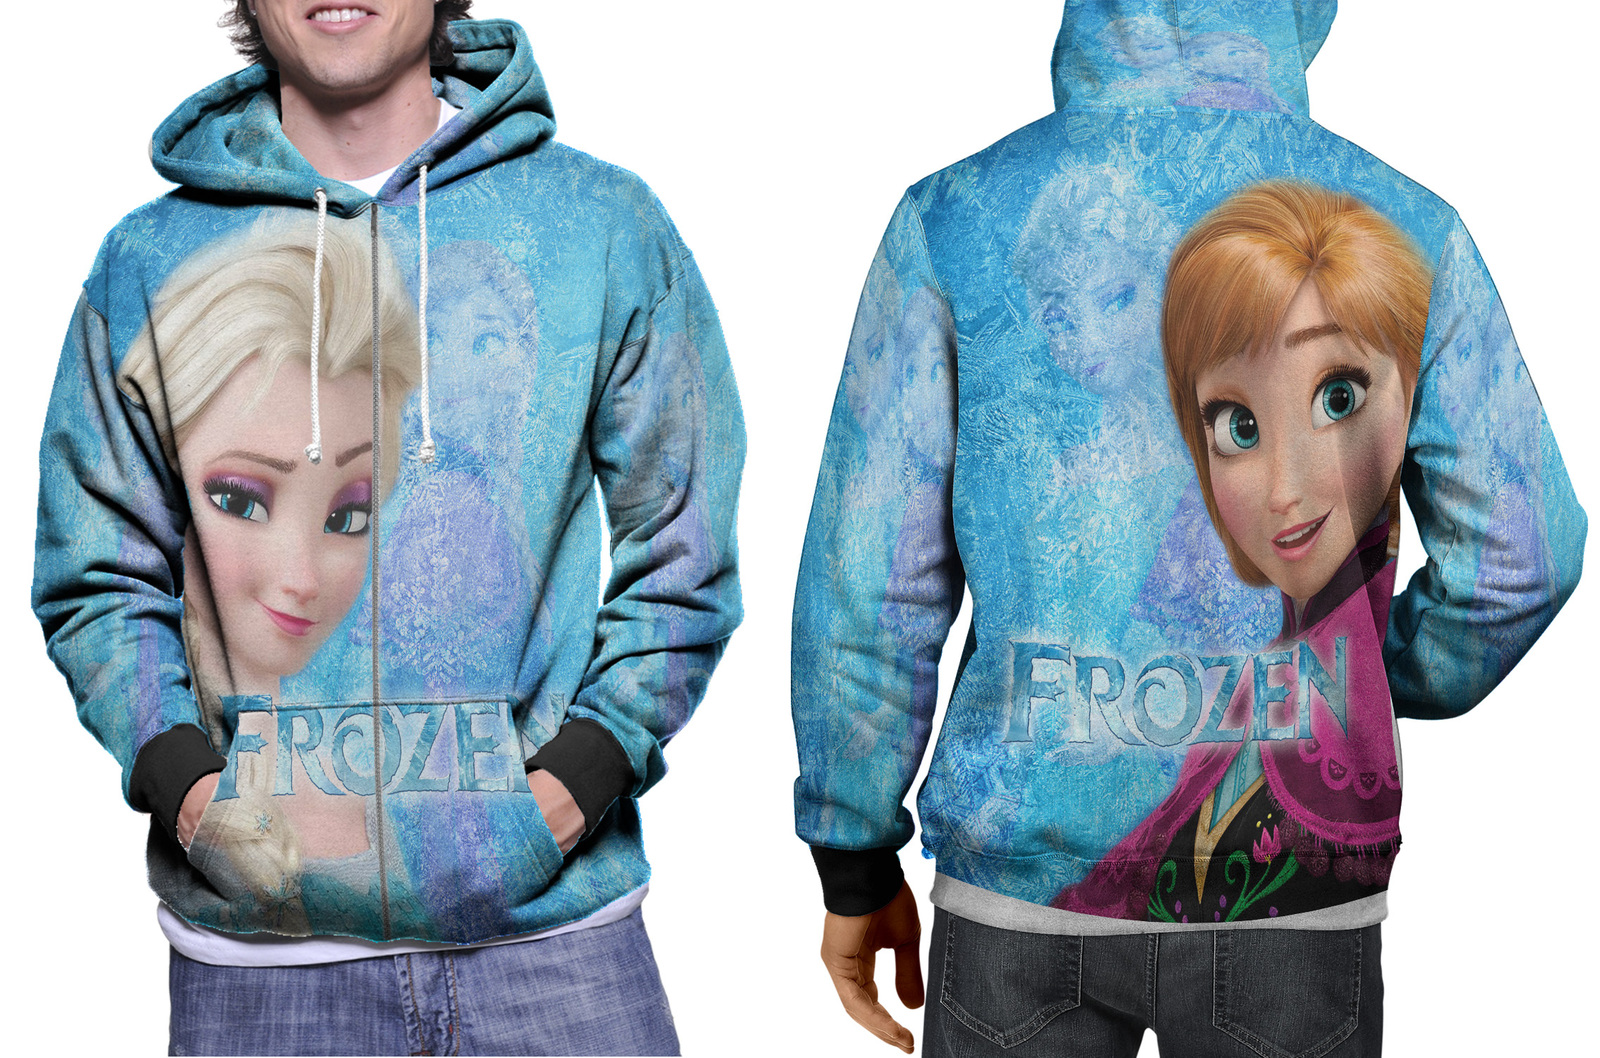 Frozen - Anna and Elsa Zipper Hoodie for Men - Hoodies & Sweatshirts